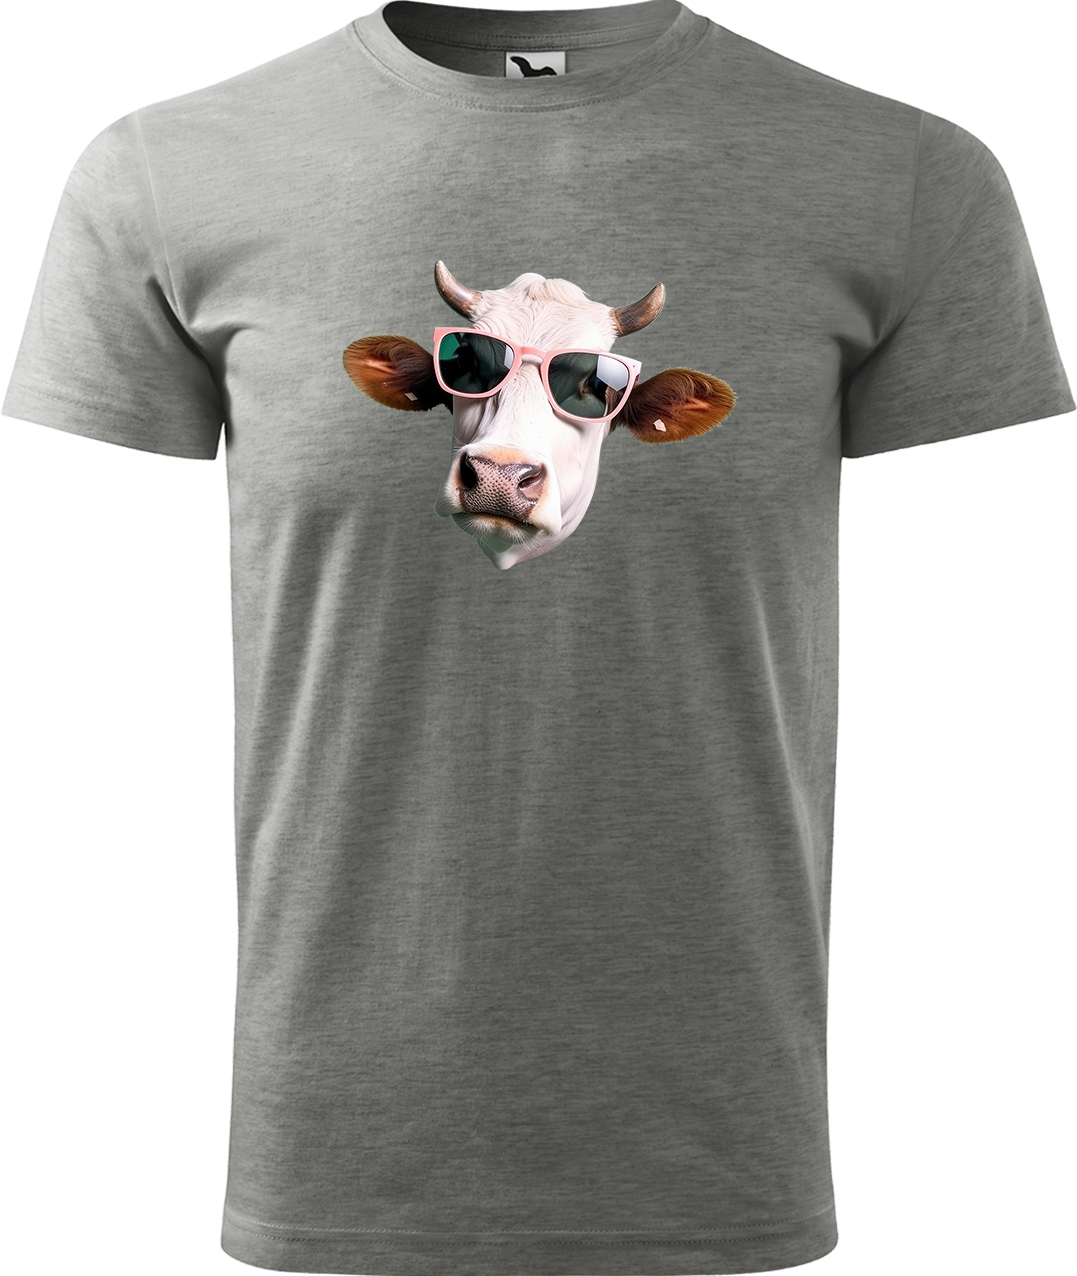 Pánské tričko s krávou - Kráva v brýlích Velikost: L, Barva: Tmavě šedý melír (12), Střih: pánský